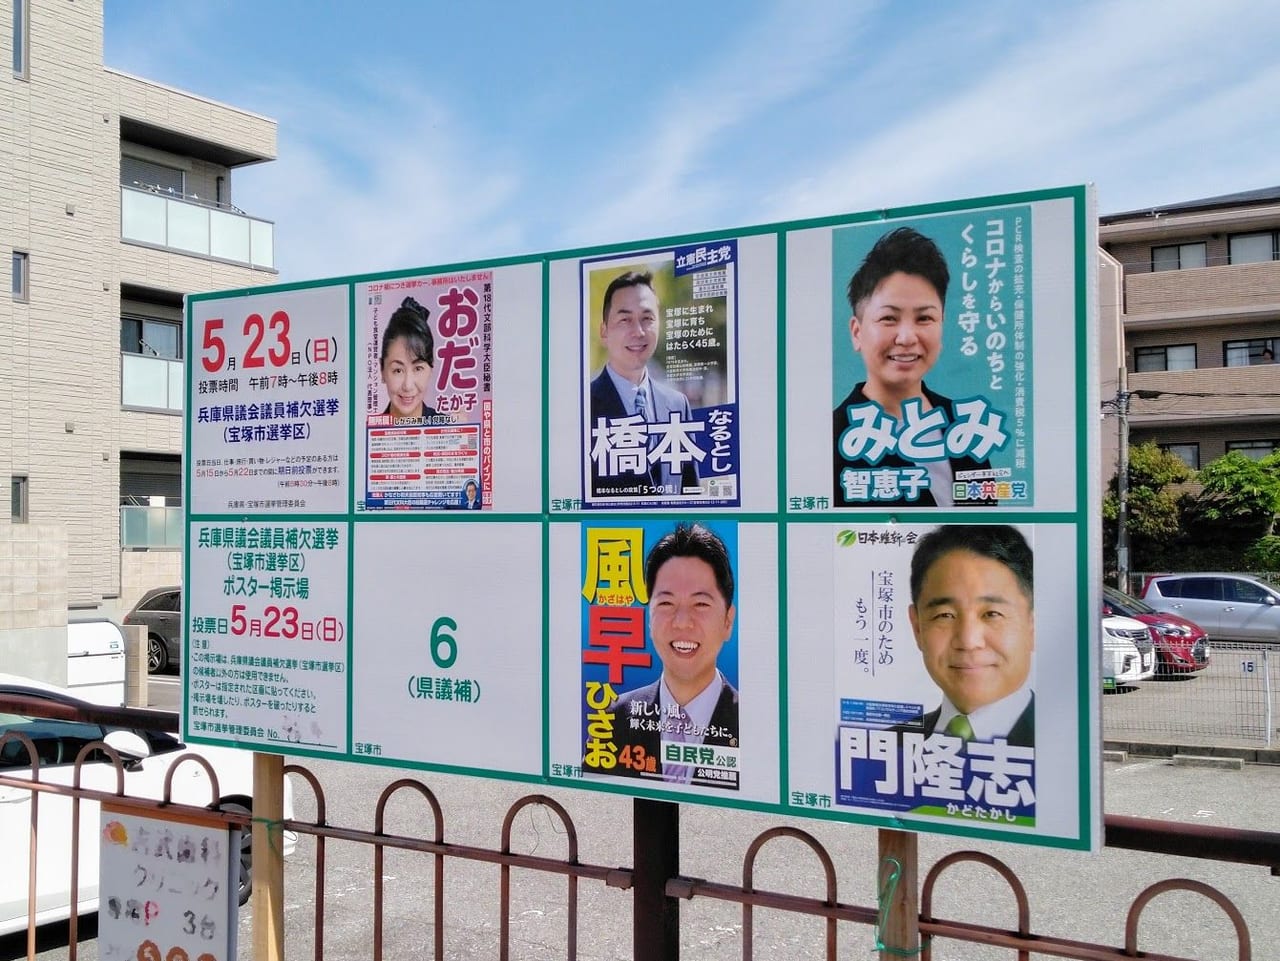 兵庫県会議員宝塚市選挙区補欠選挙